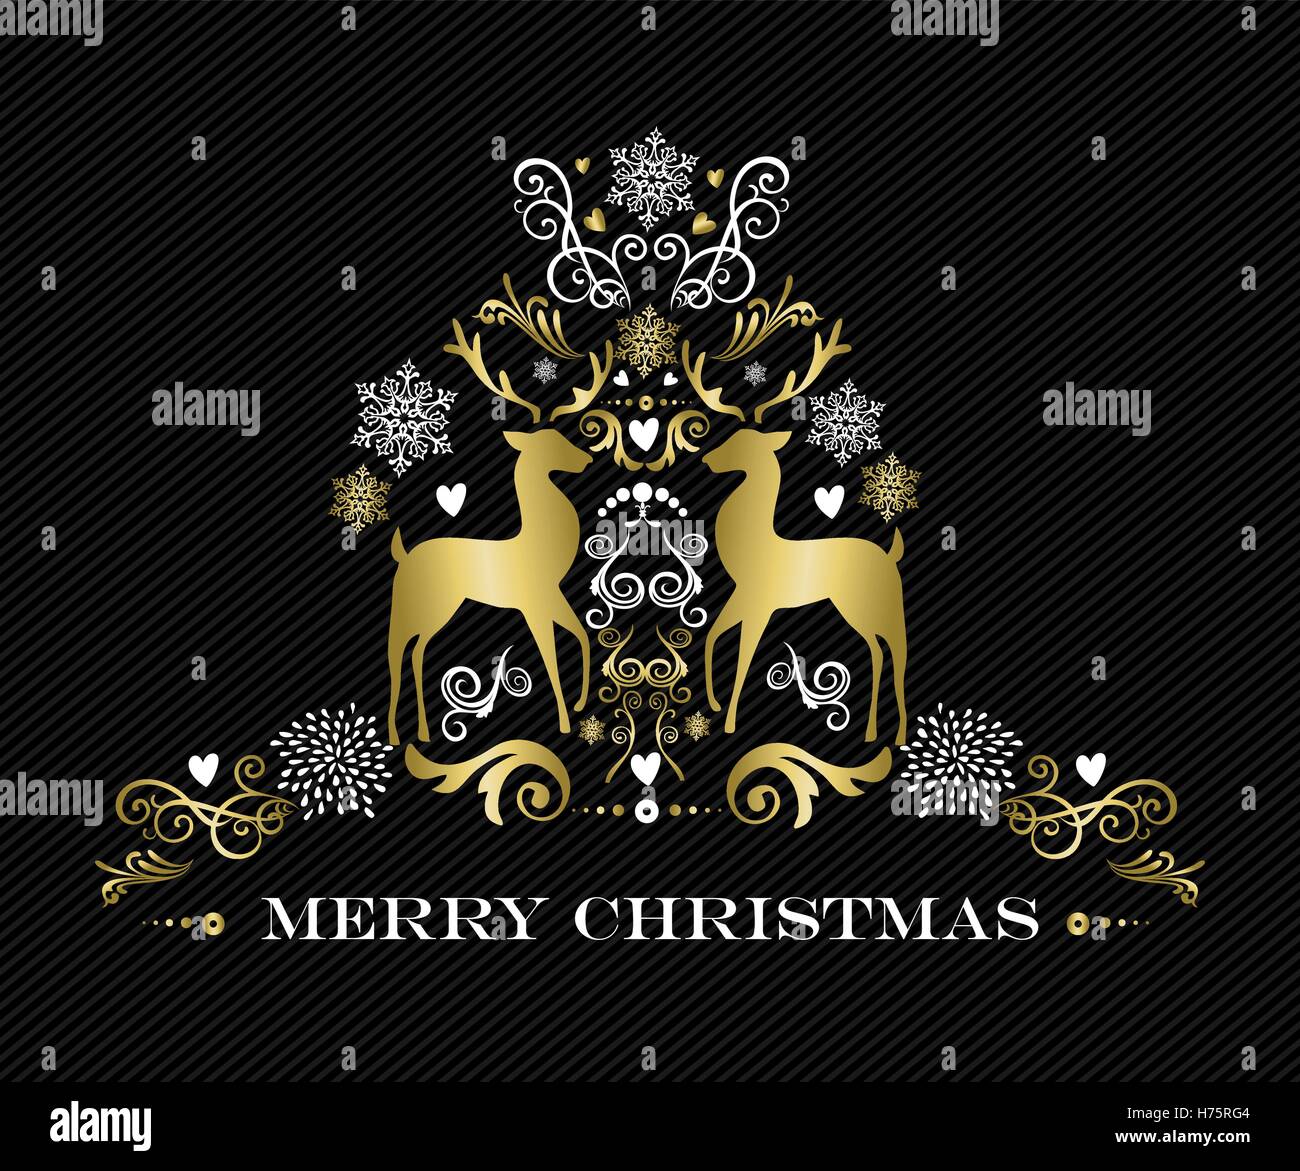 Joyeux Noël, renne d'or carte illustration art ornement vacances d'hiver avec des éléments de décoration. Vecteur EPS10. Illustration de Vecteur